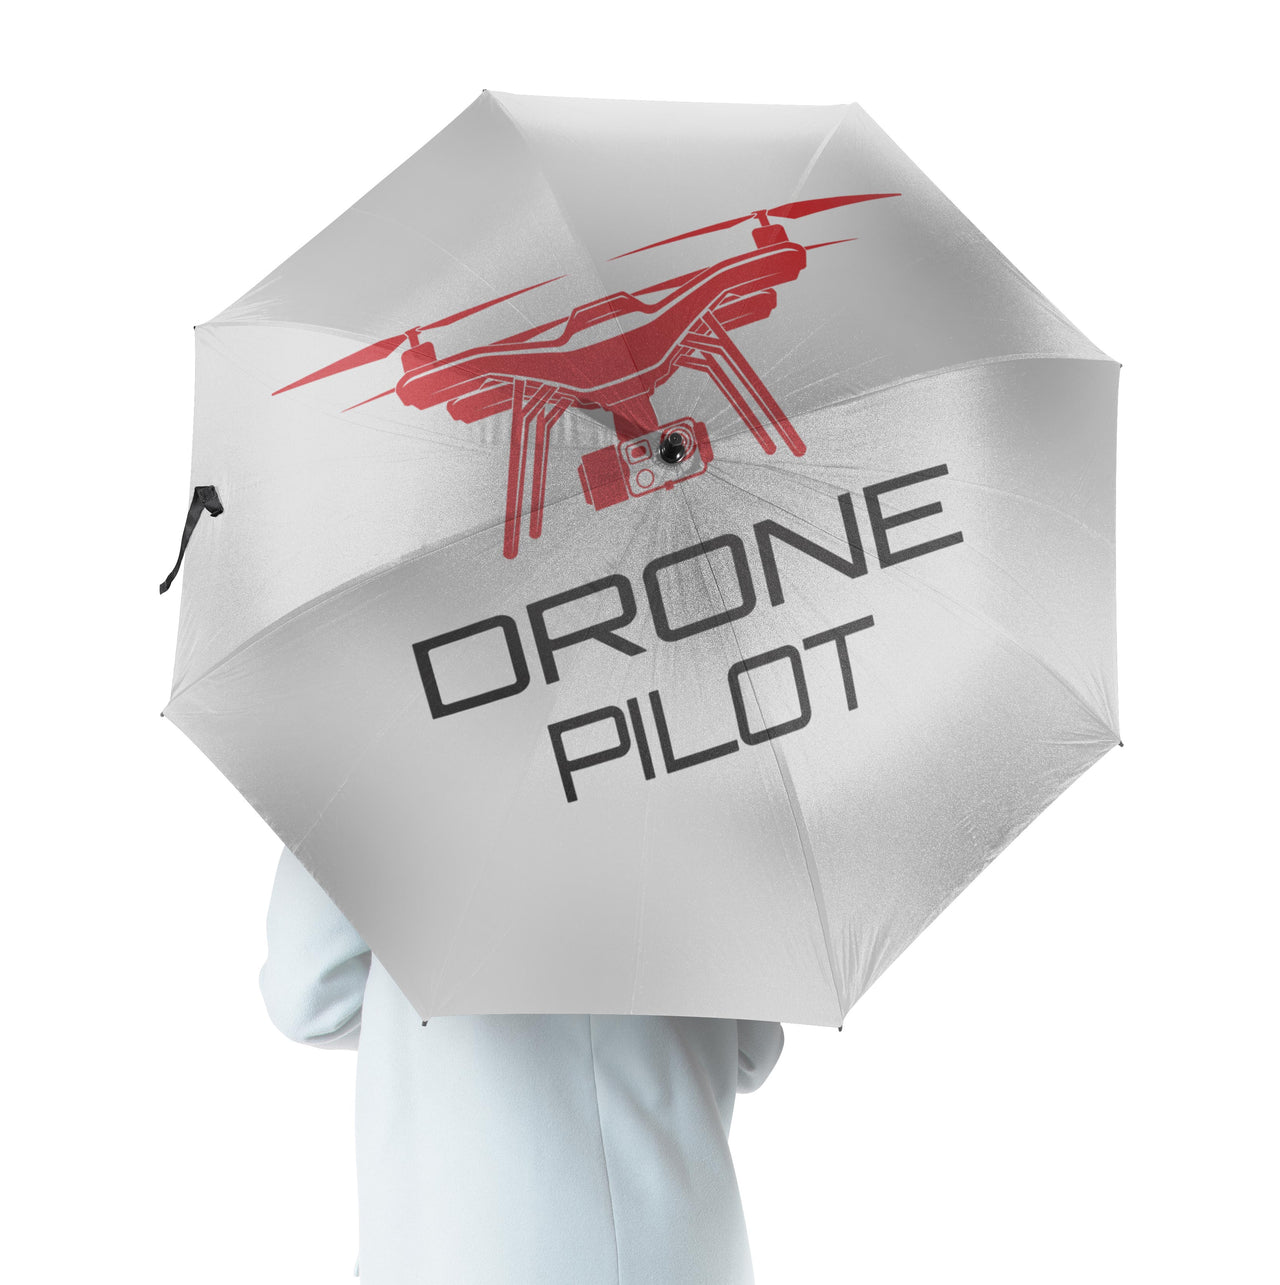 Drone Pilot Designed Umbrella